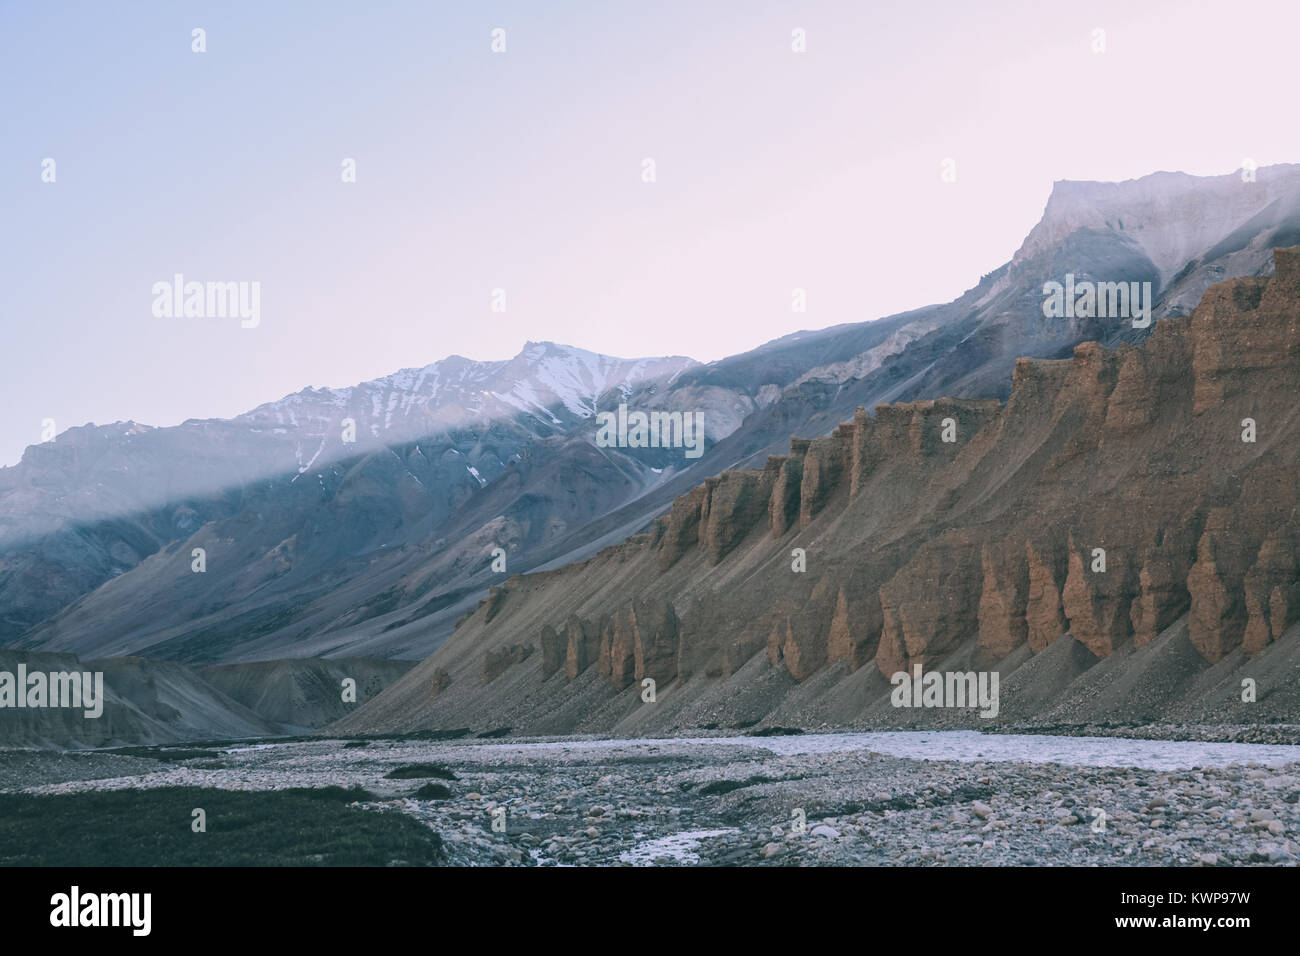 De belles formations naturelles et rivière de montagne dans la région du Ladakh, Himalaya Indien Banque D'Images